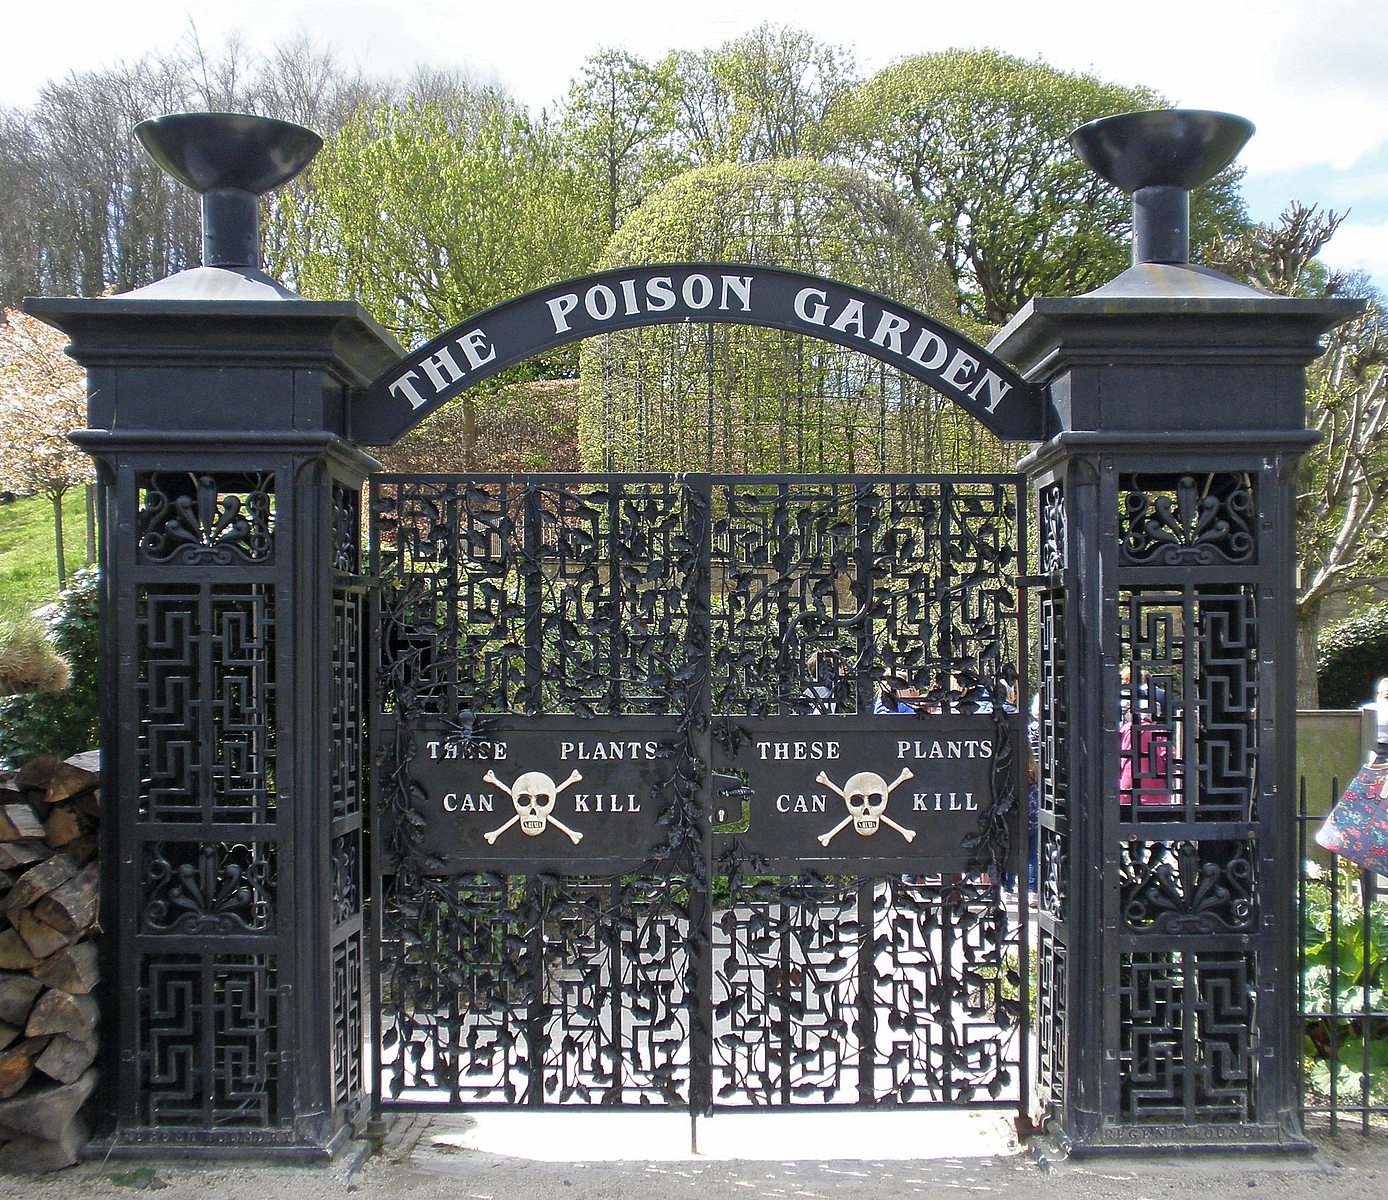 The Poison Garden: Adéntrate en el Jardín más peligroso del mundo (si te atreves)